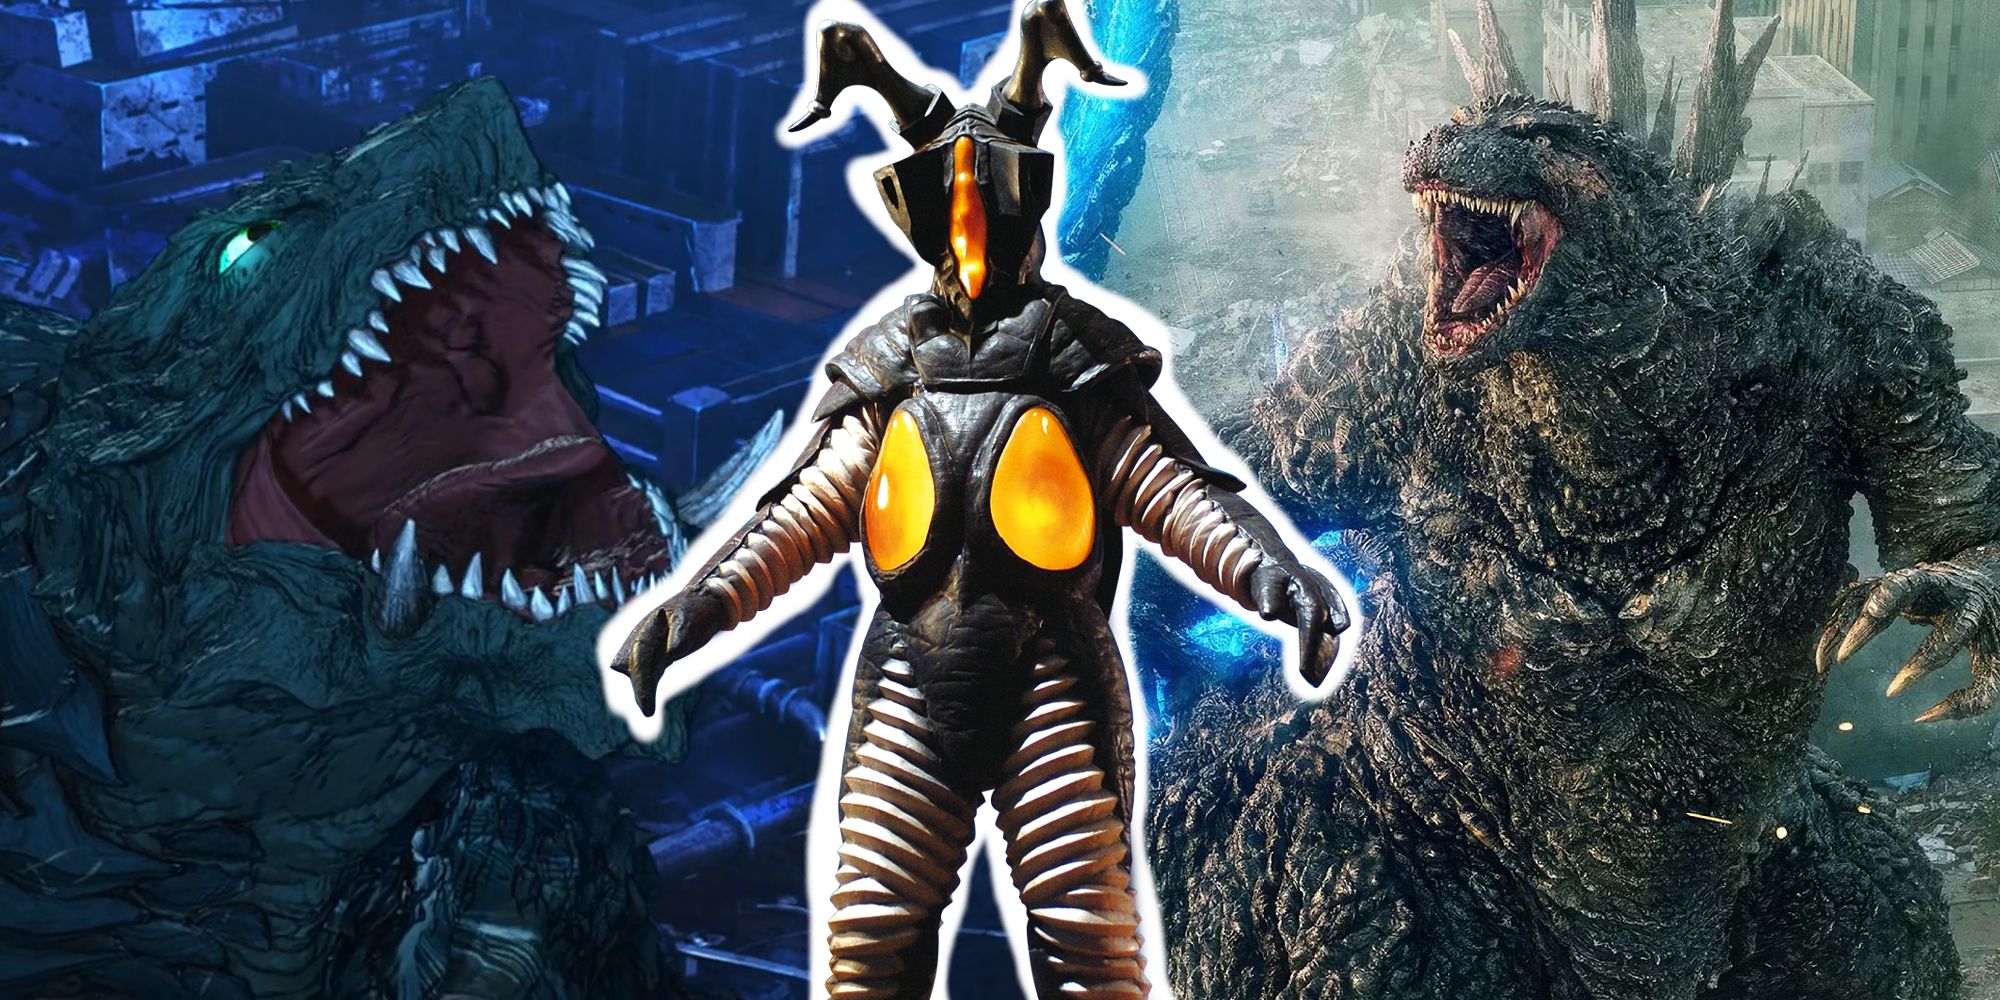 A split image featuring Gamera, Zetton, and Godzilla.